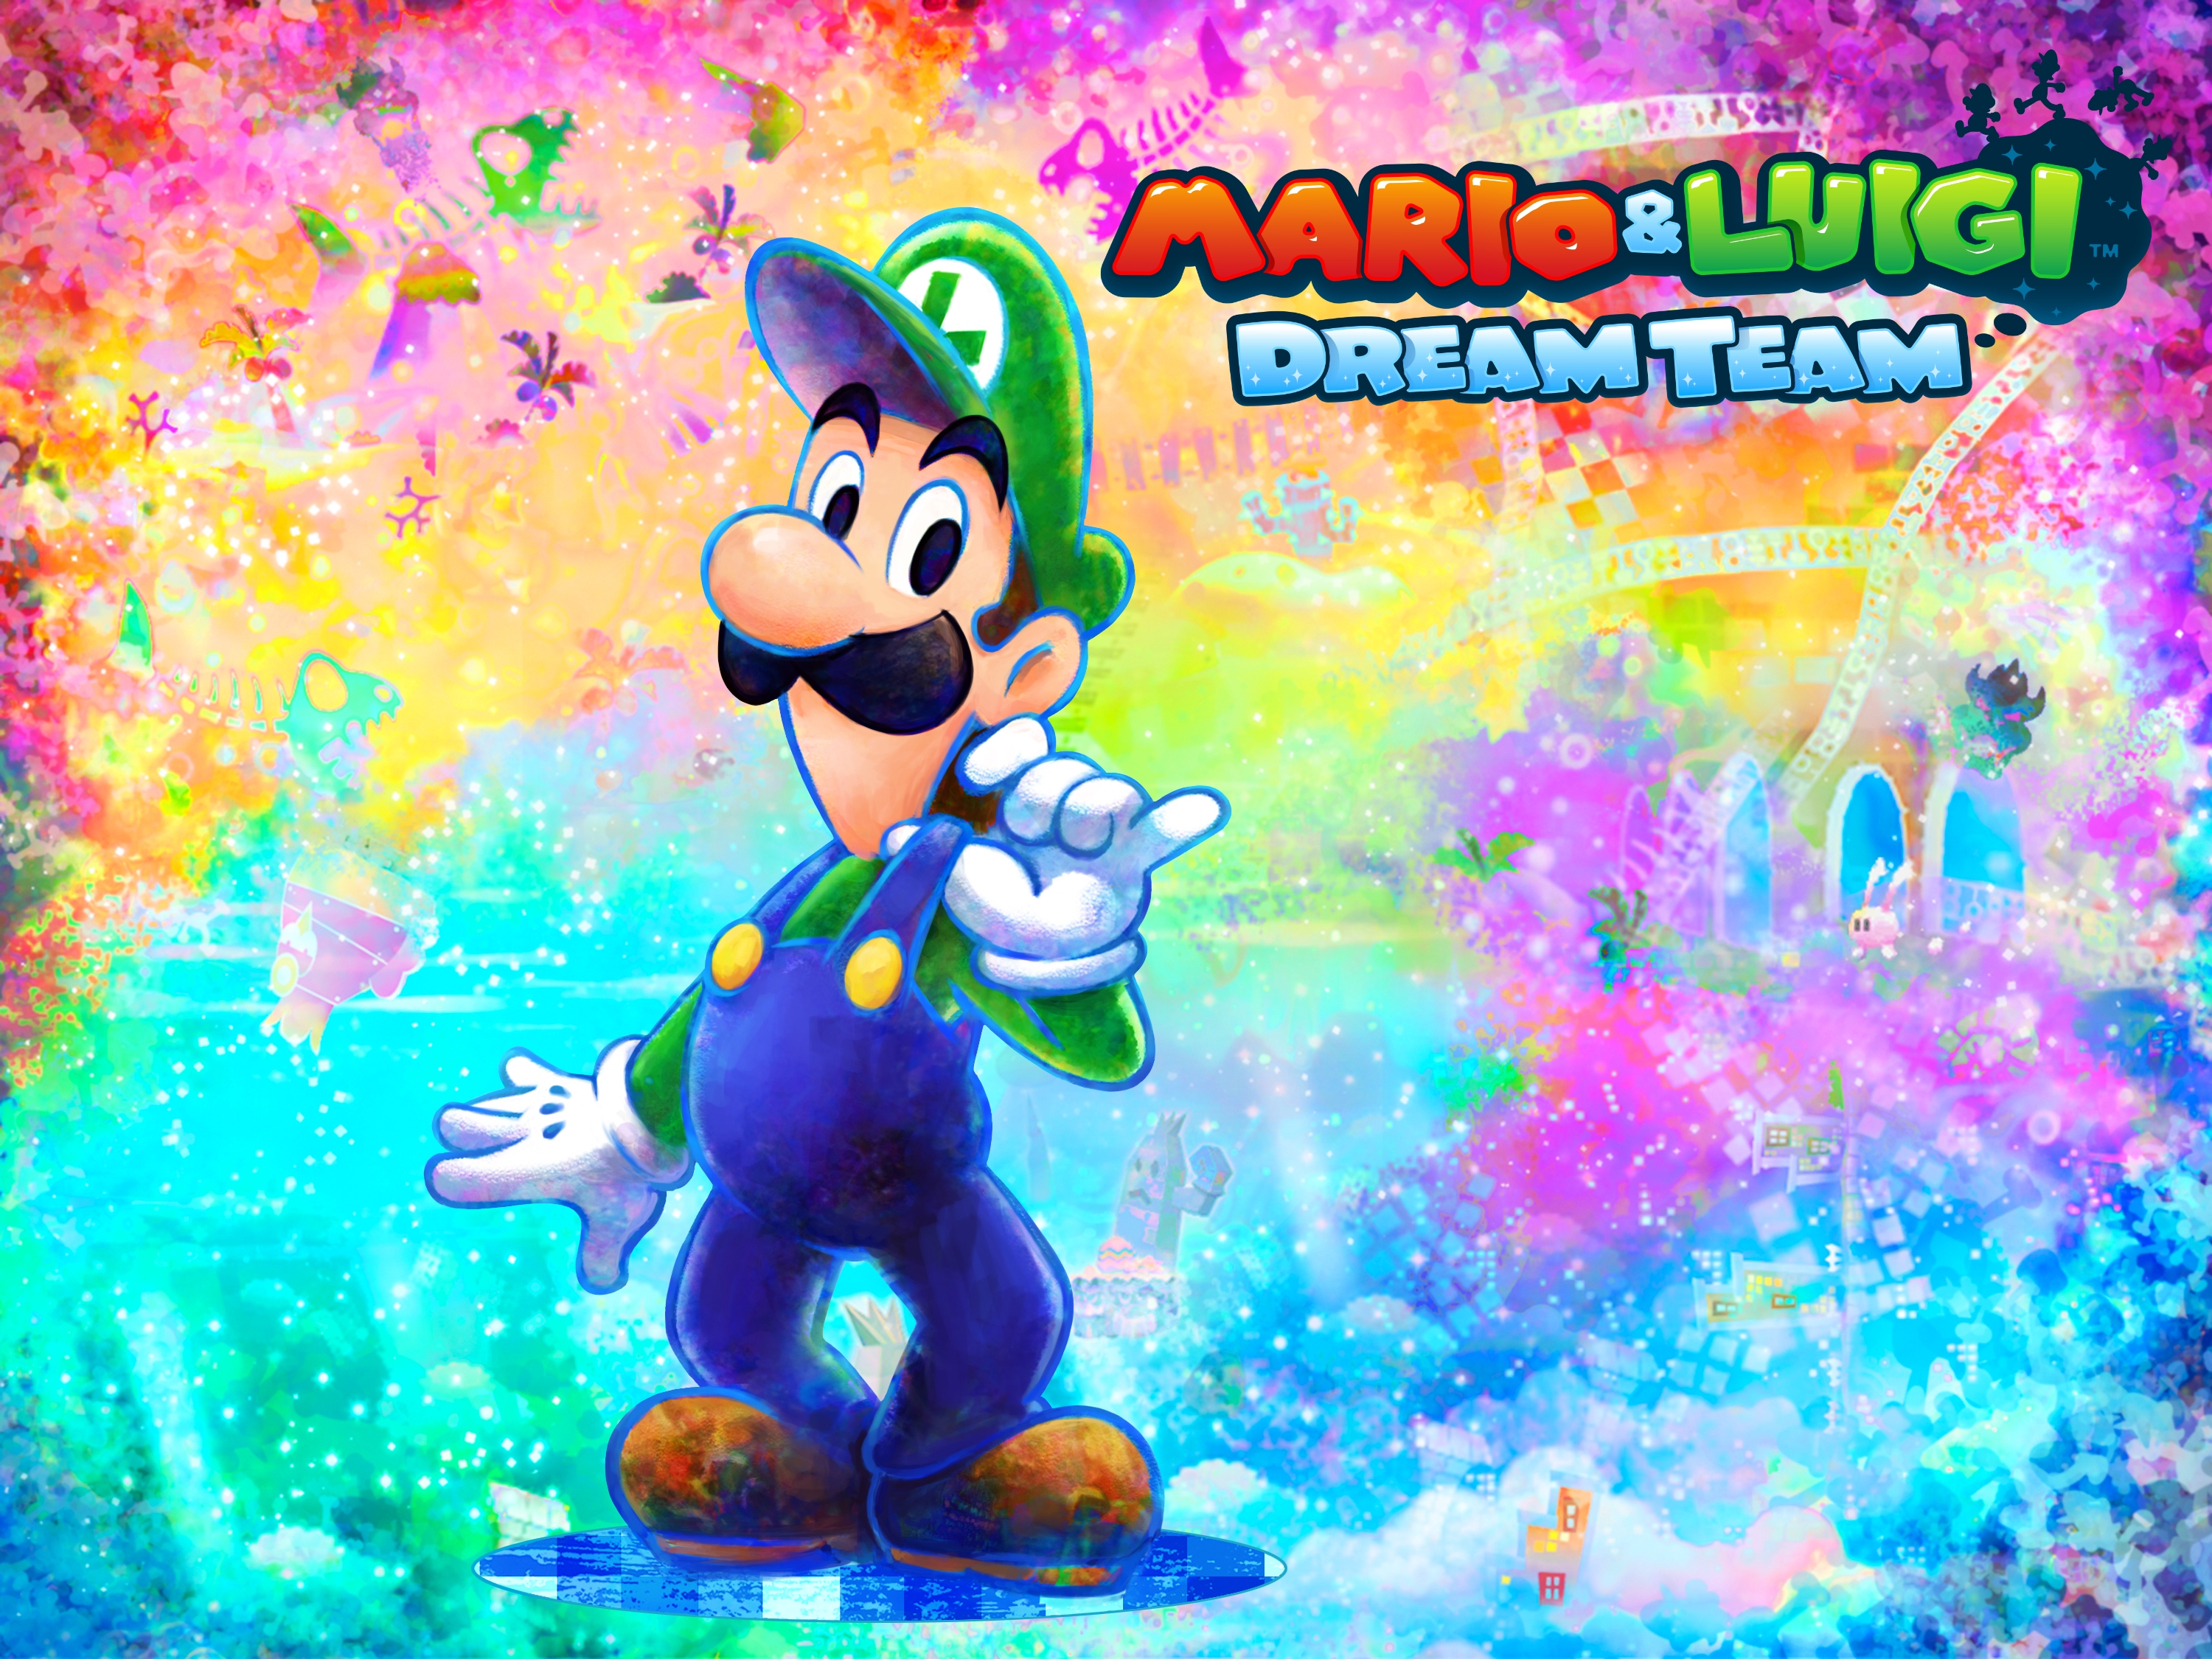 Mario luigi dream team. Mario and Luigi Dream Team. Dream Team Wallpaper. Mario and Luigi Dream Team Wallpaper Phone. Mario and Luigi Dream Team Wallpaper.